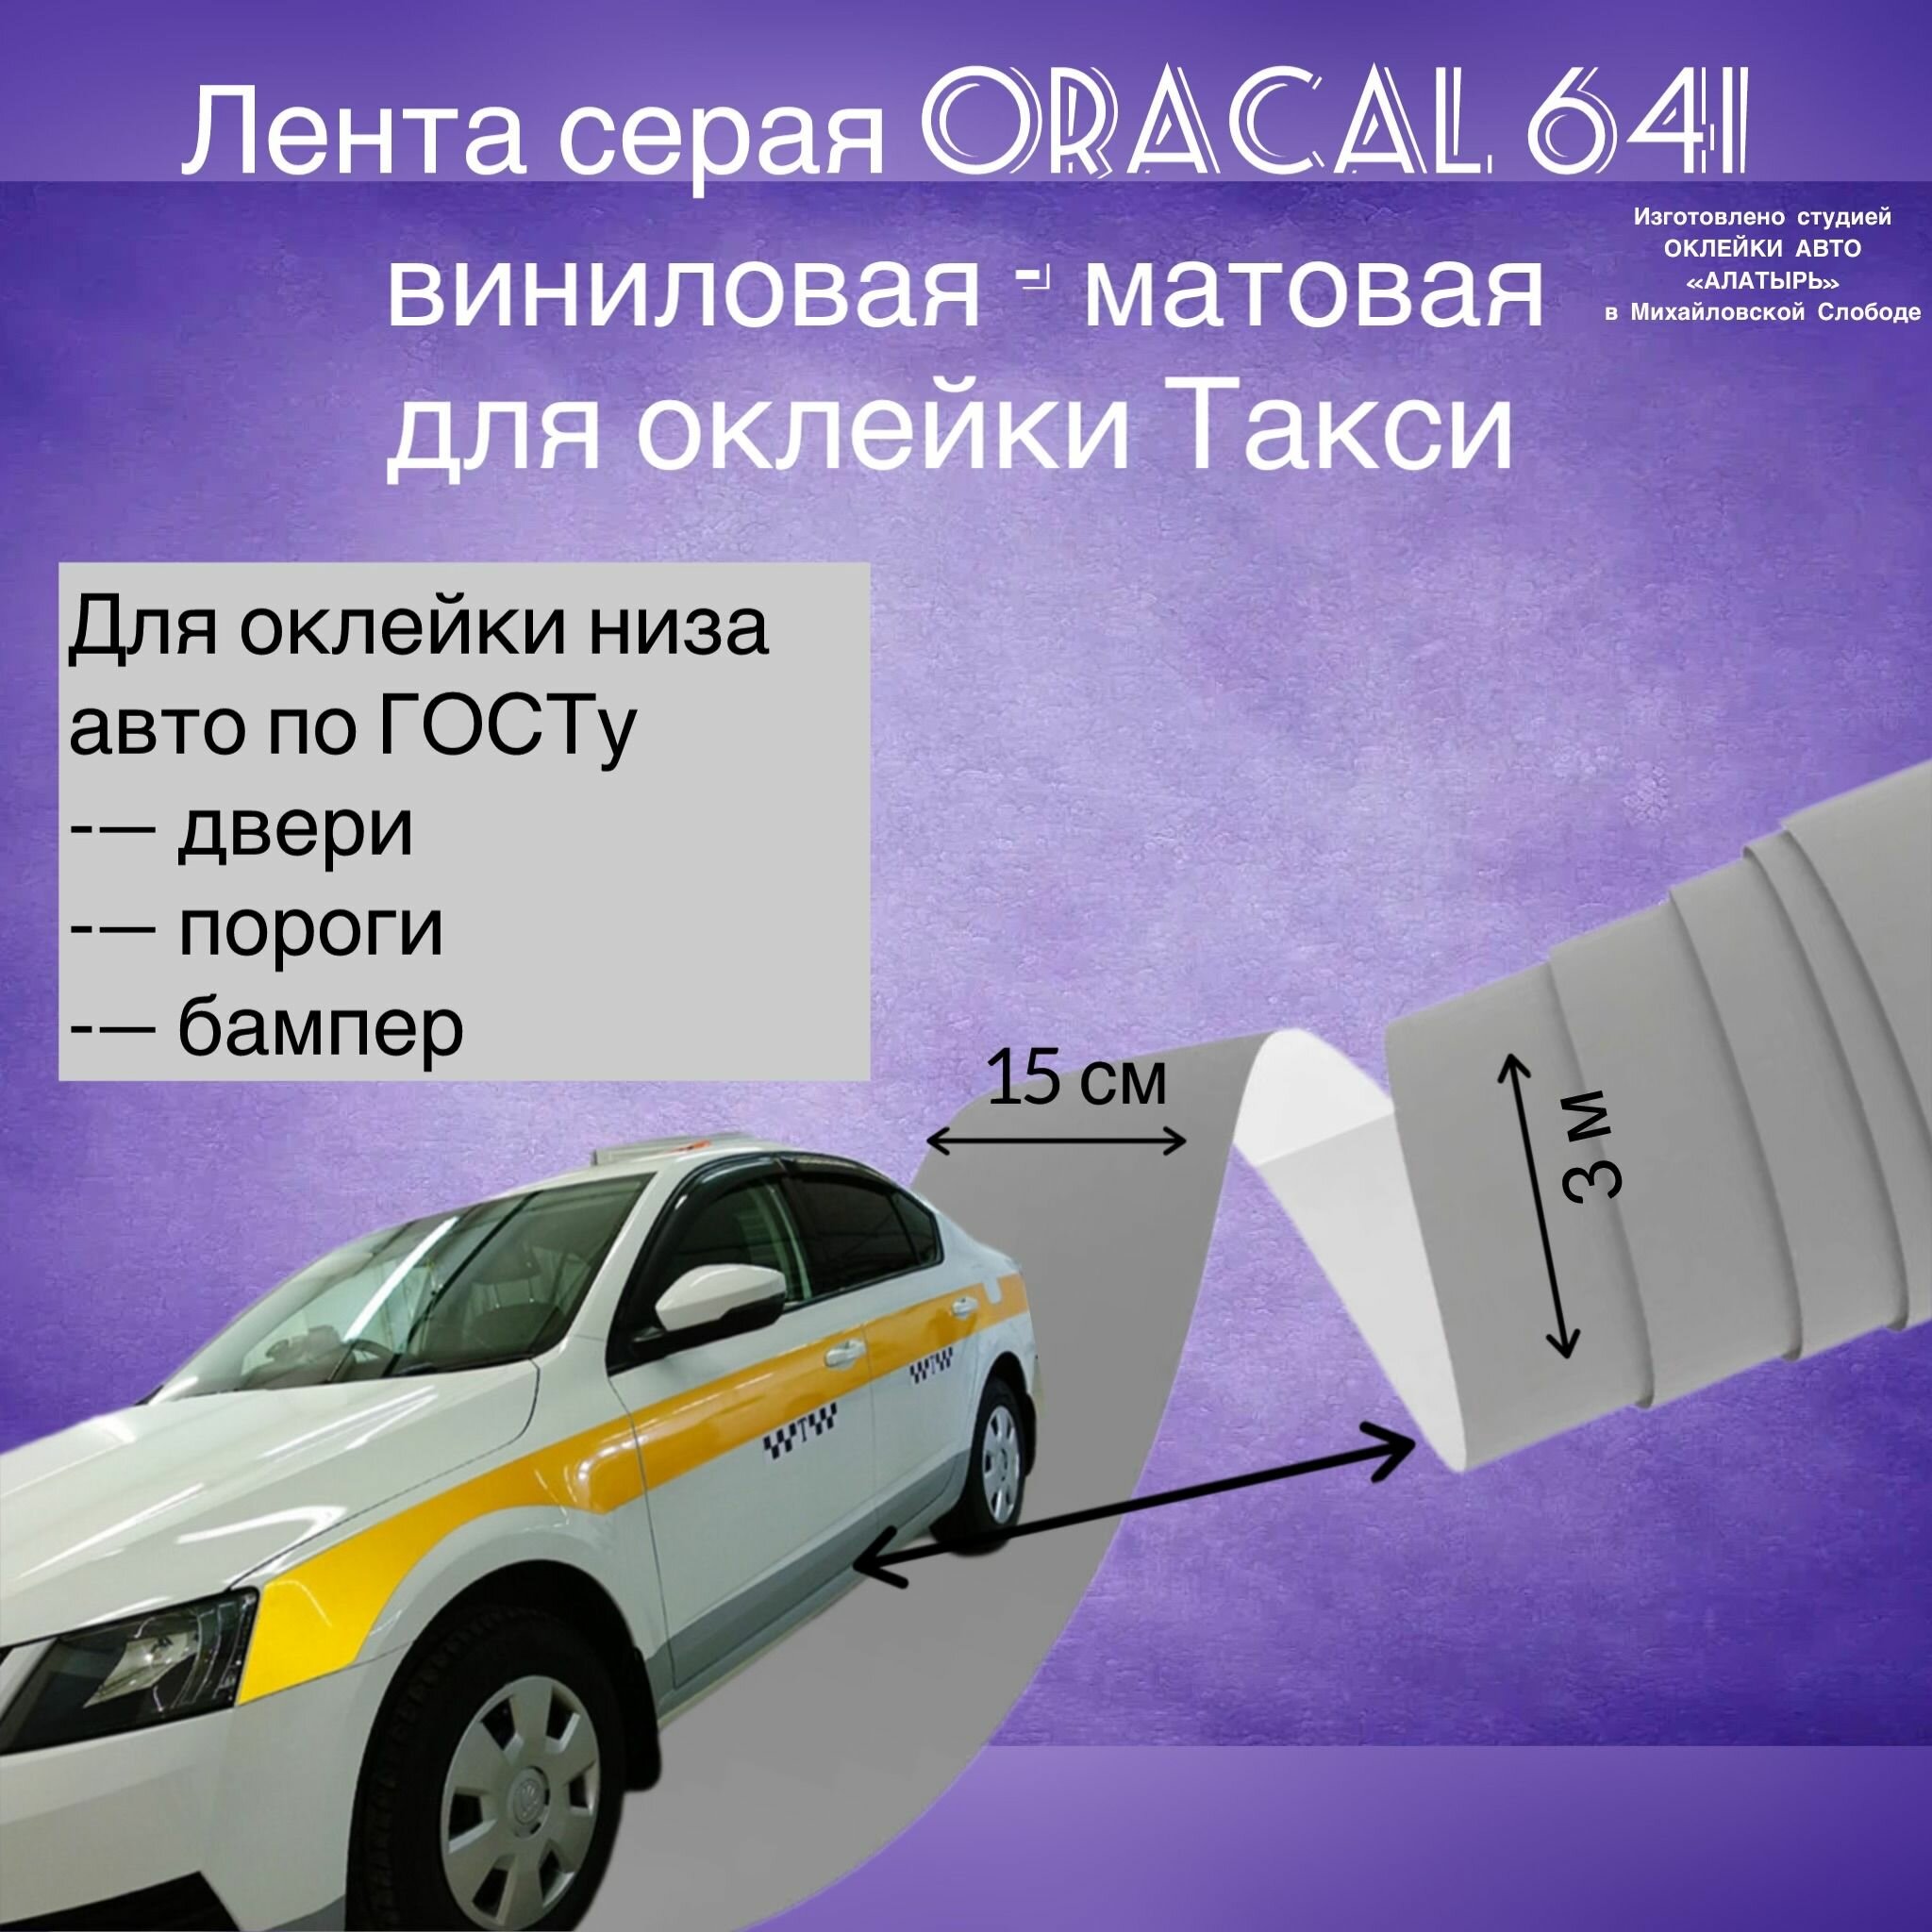 Виниловая пленка для такси МО по ГОСТ, ORACAL 641 3х0,15 м, серая, глянцевая, 100 мкм